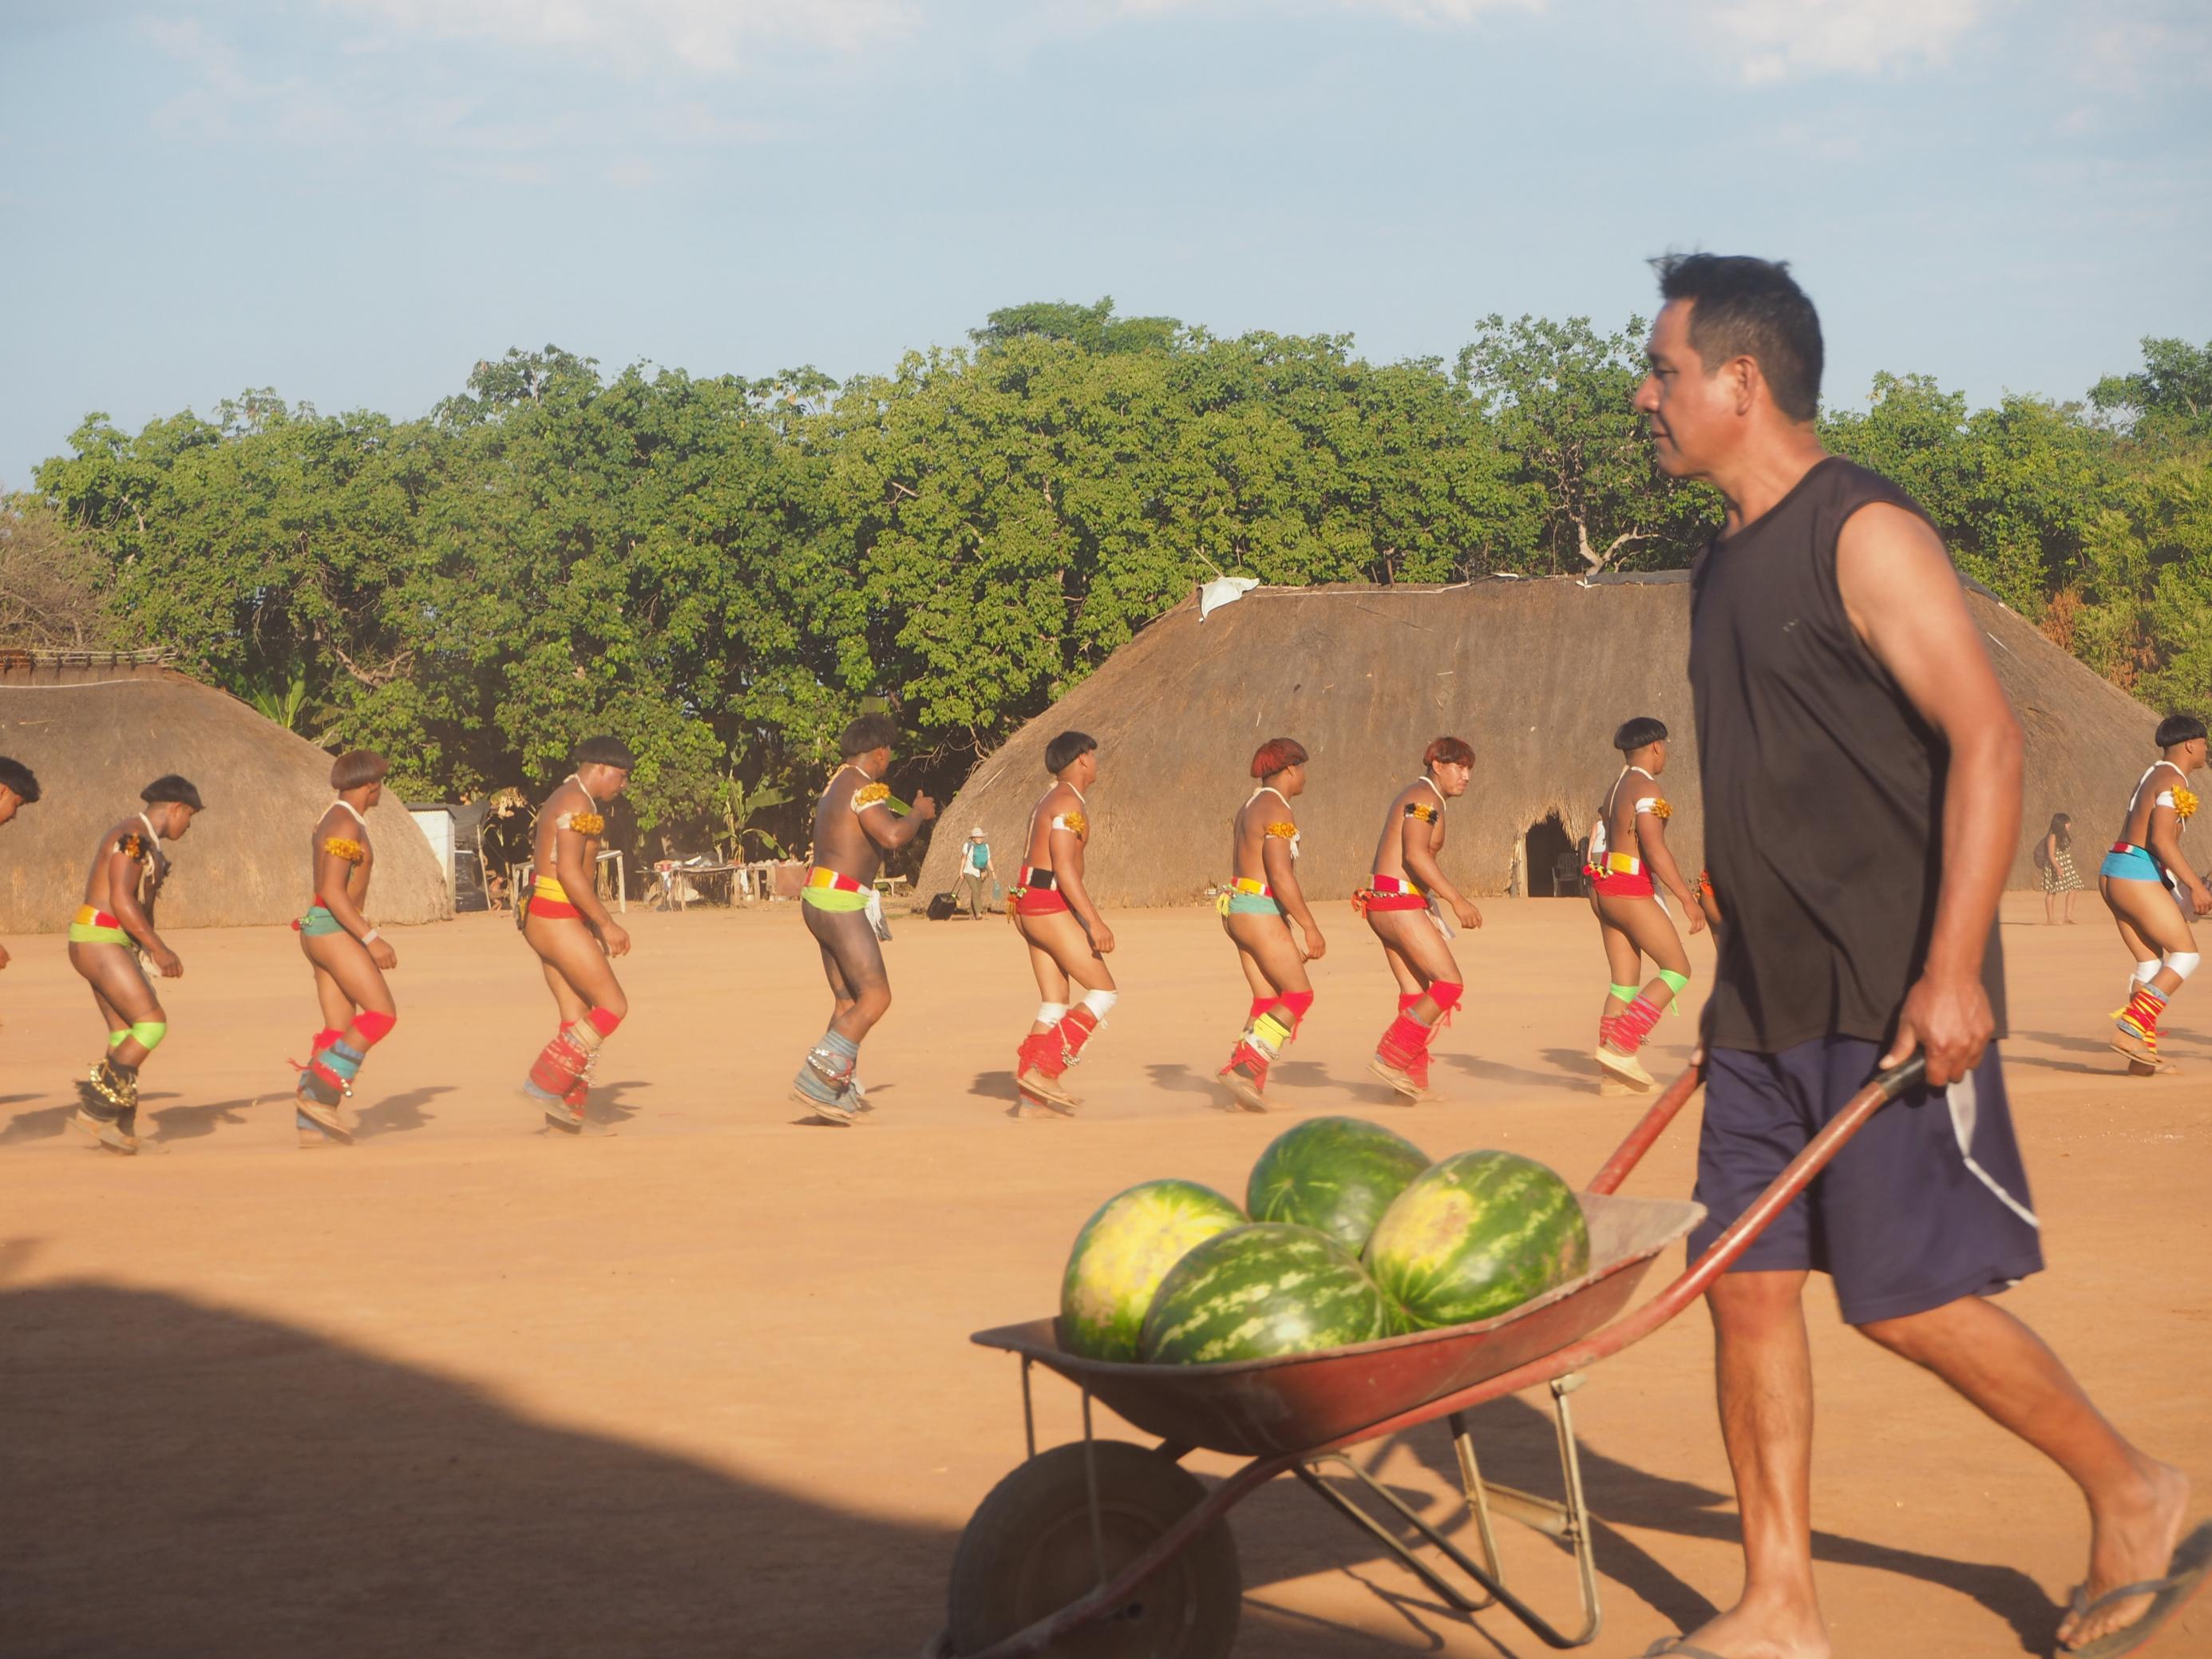 Ein Mann bringt mit einer Schubkarre mehrere Wassermelonen für die Tänzer.